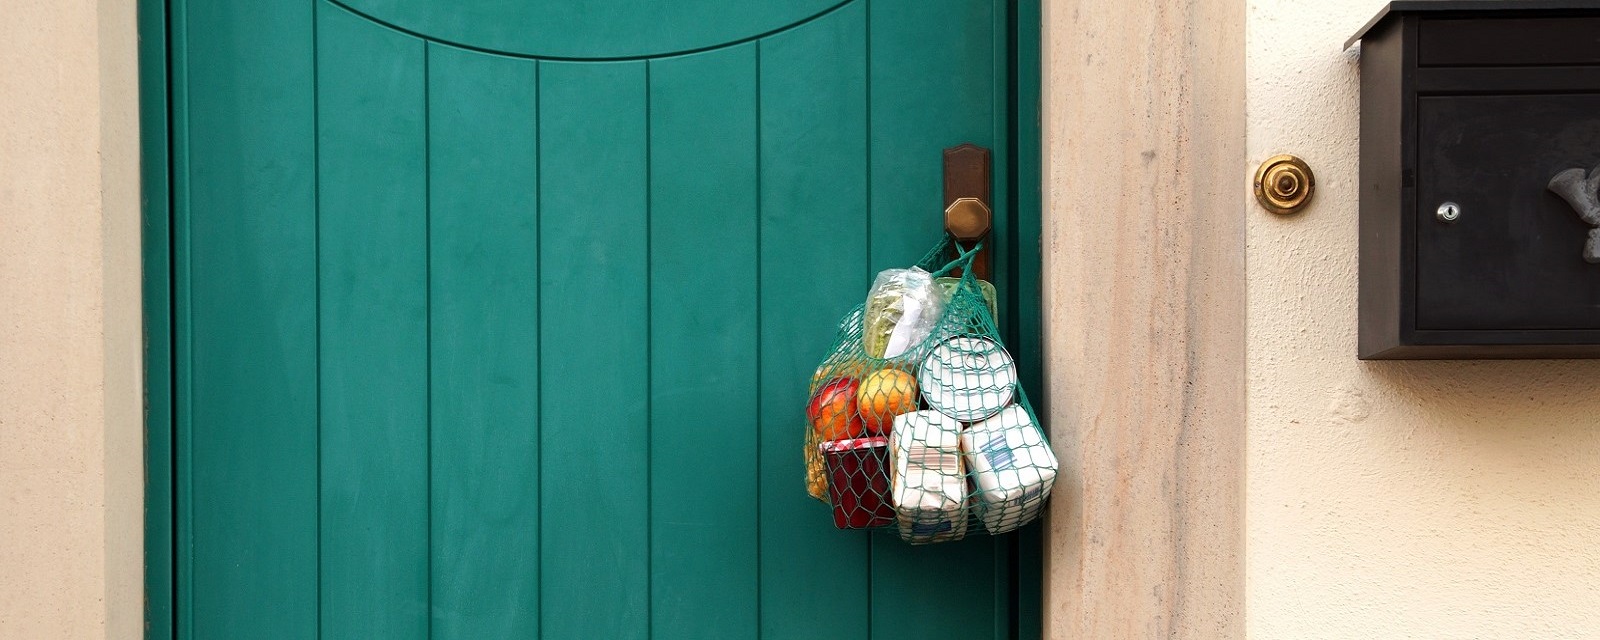 Beutel gefüllt mit Lebensmitteln hängt außen an einer geschlossenen Haustür.